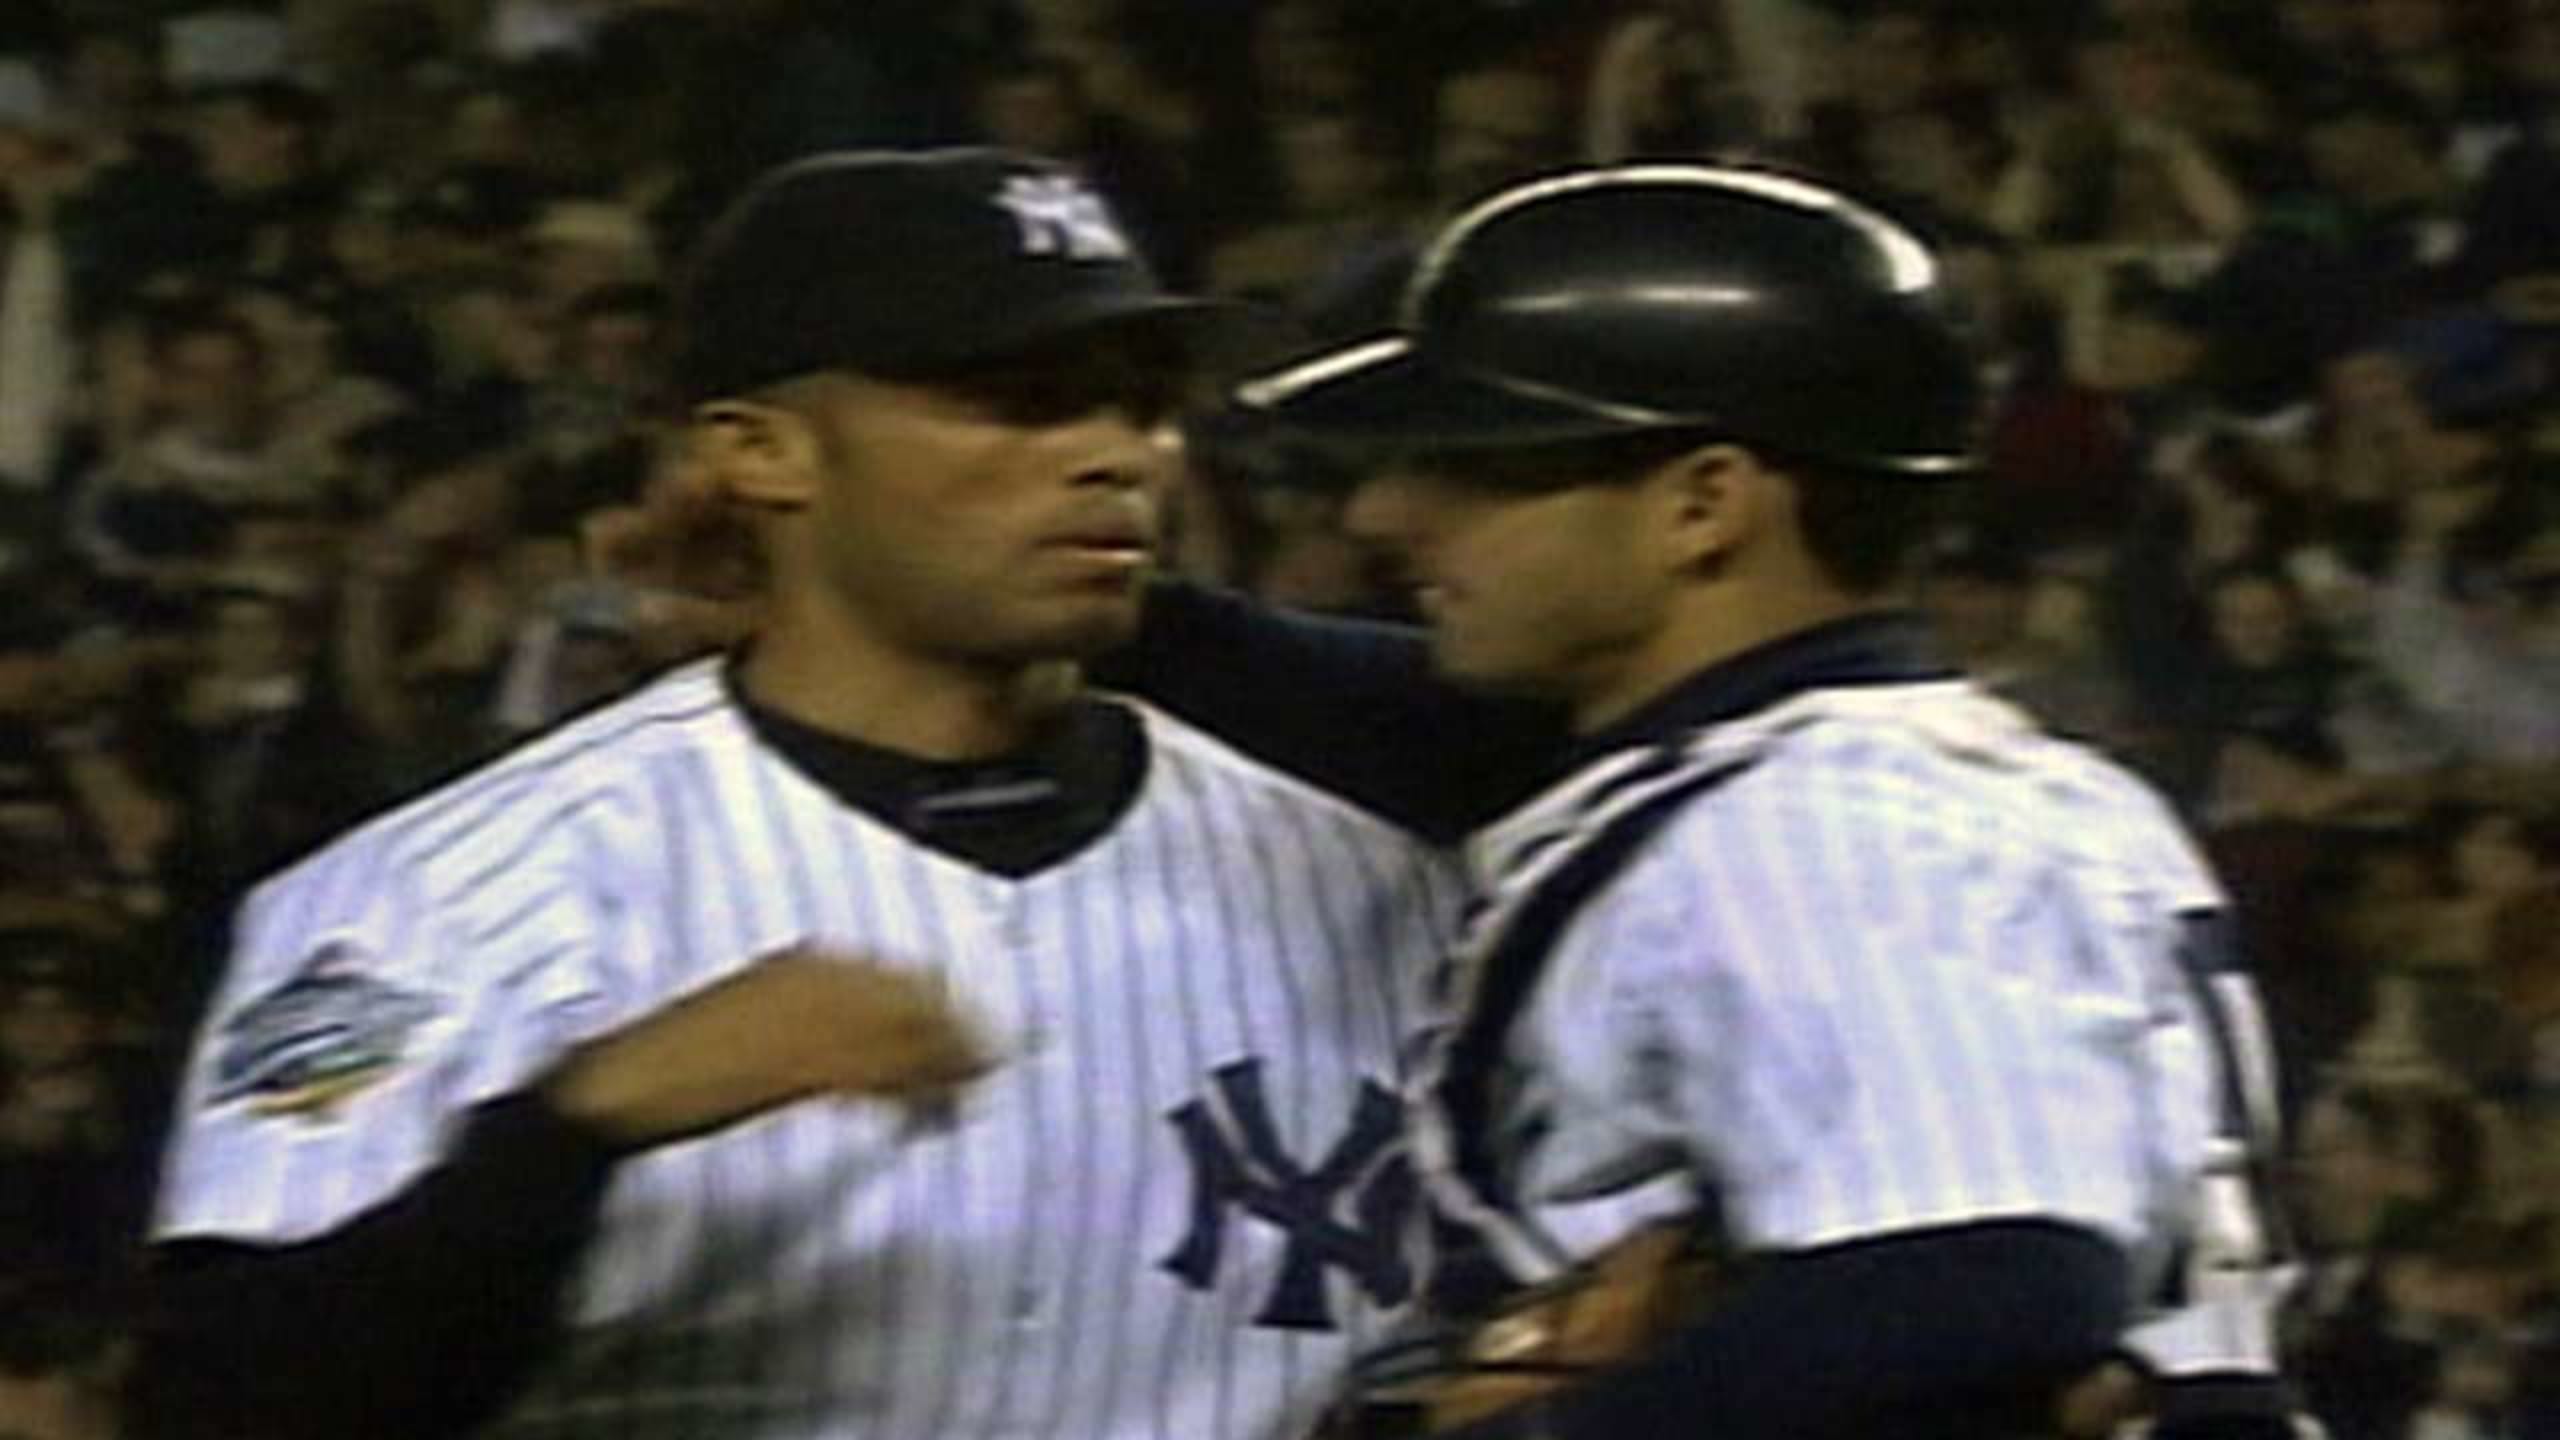 1998 Yankees World Series: Tino Martinez grand slam has 25th anniversary -  Pinstripe Alley